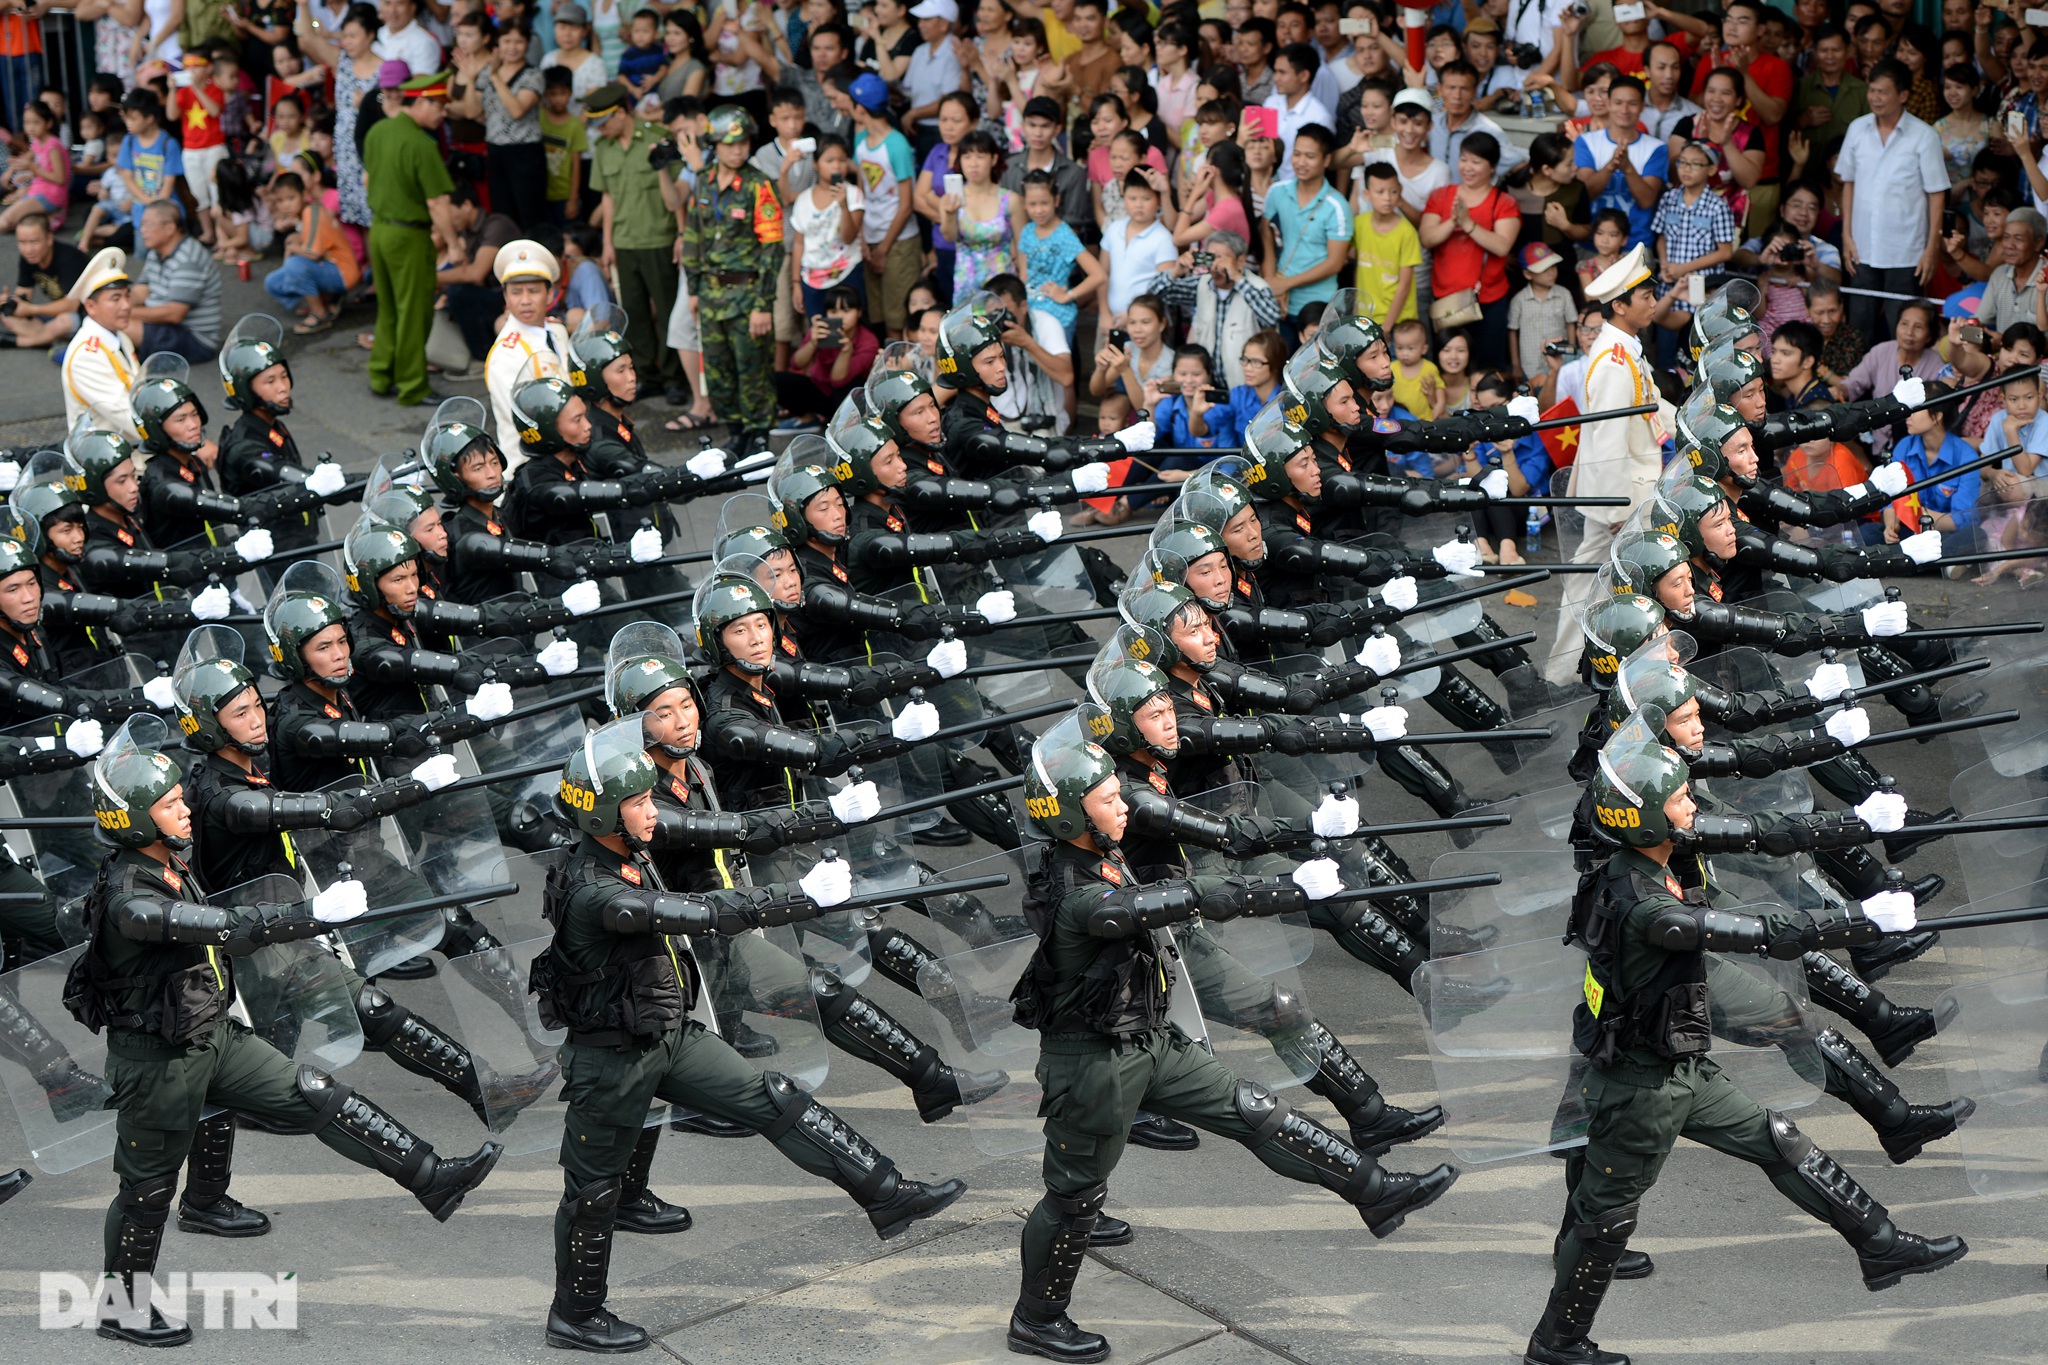 Ngắm Lễ diễu binh hùng tráng, rộn ràng đường phố Thủ đô dịp Quốc khánh 2015 - 37